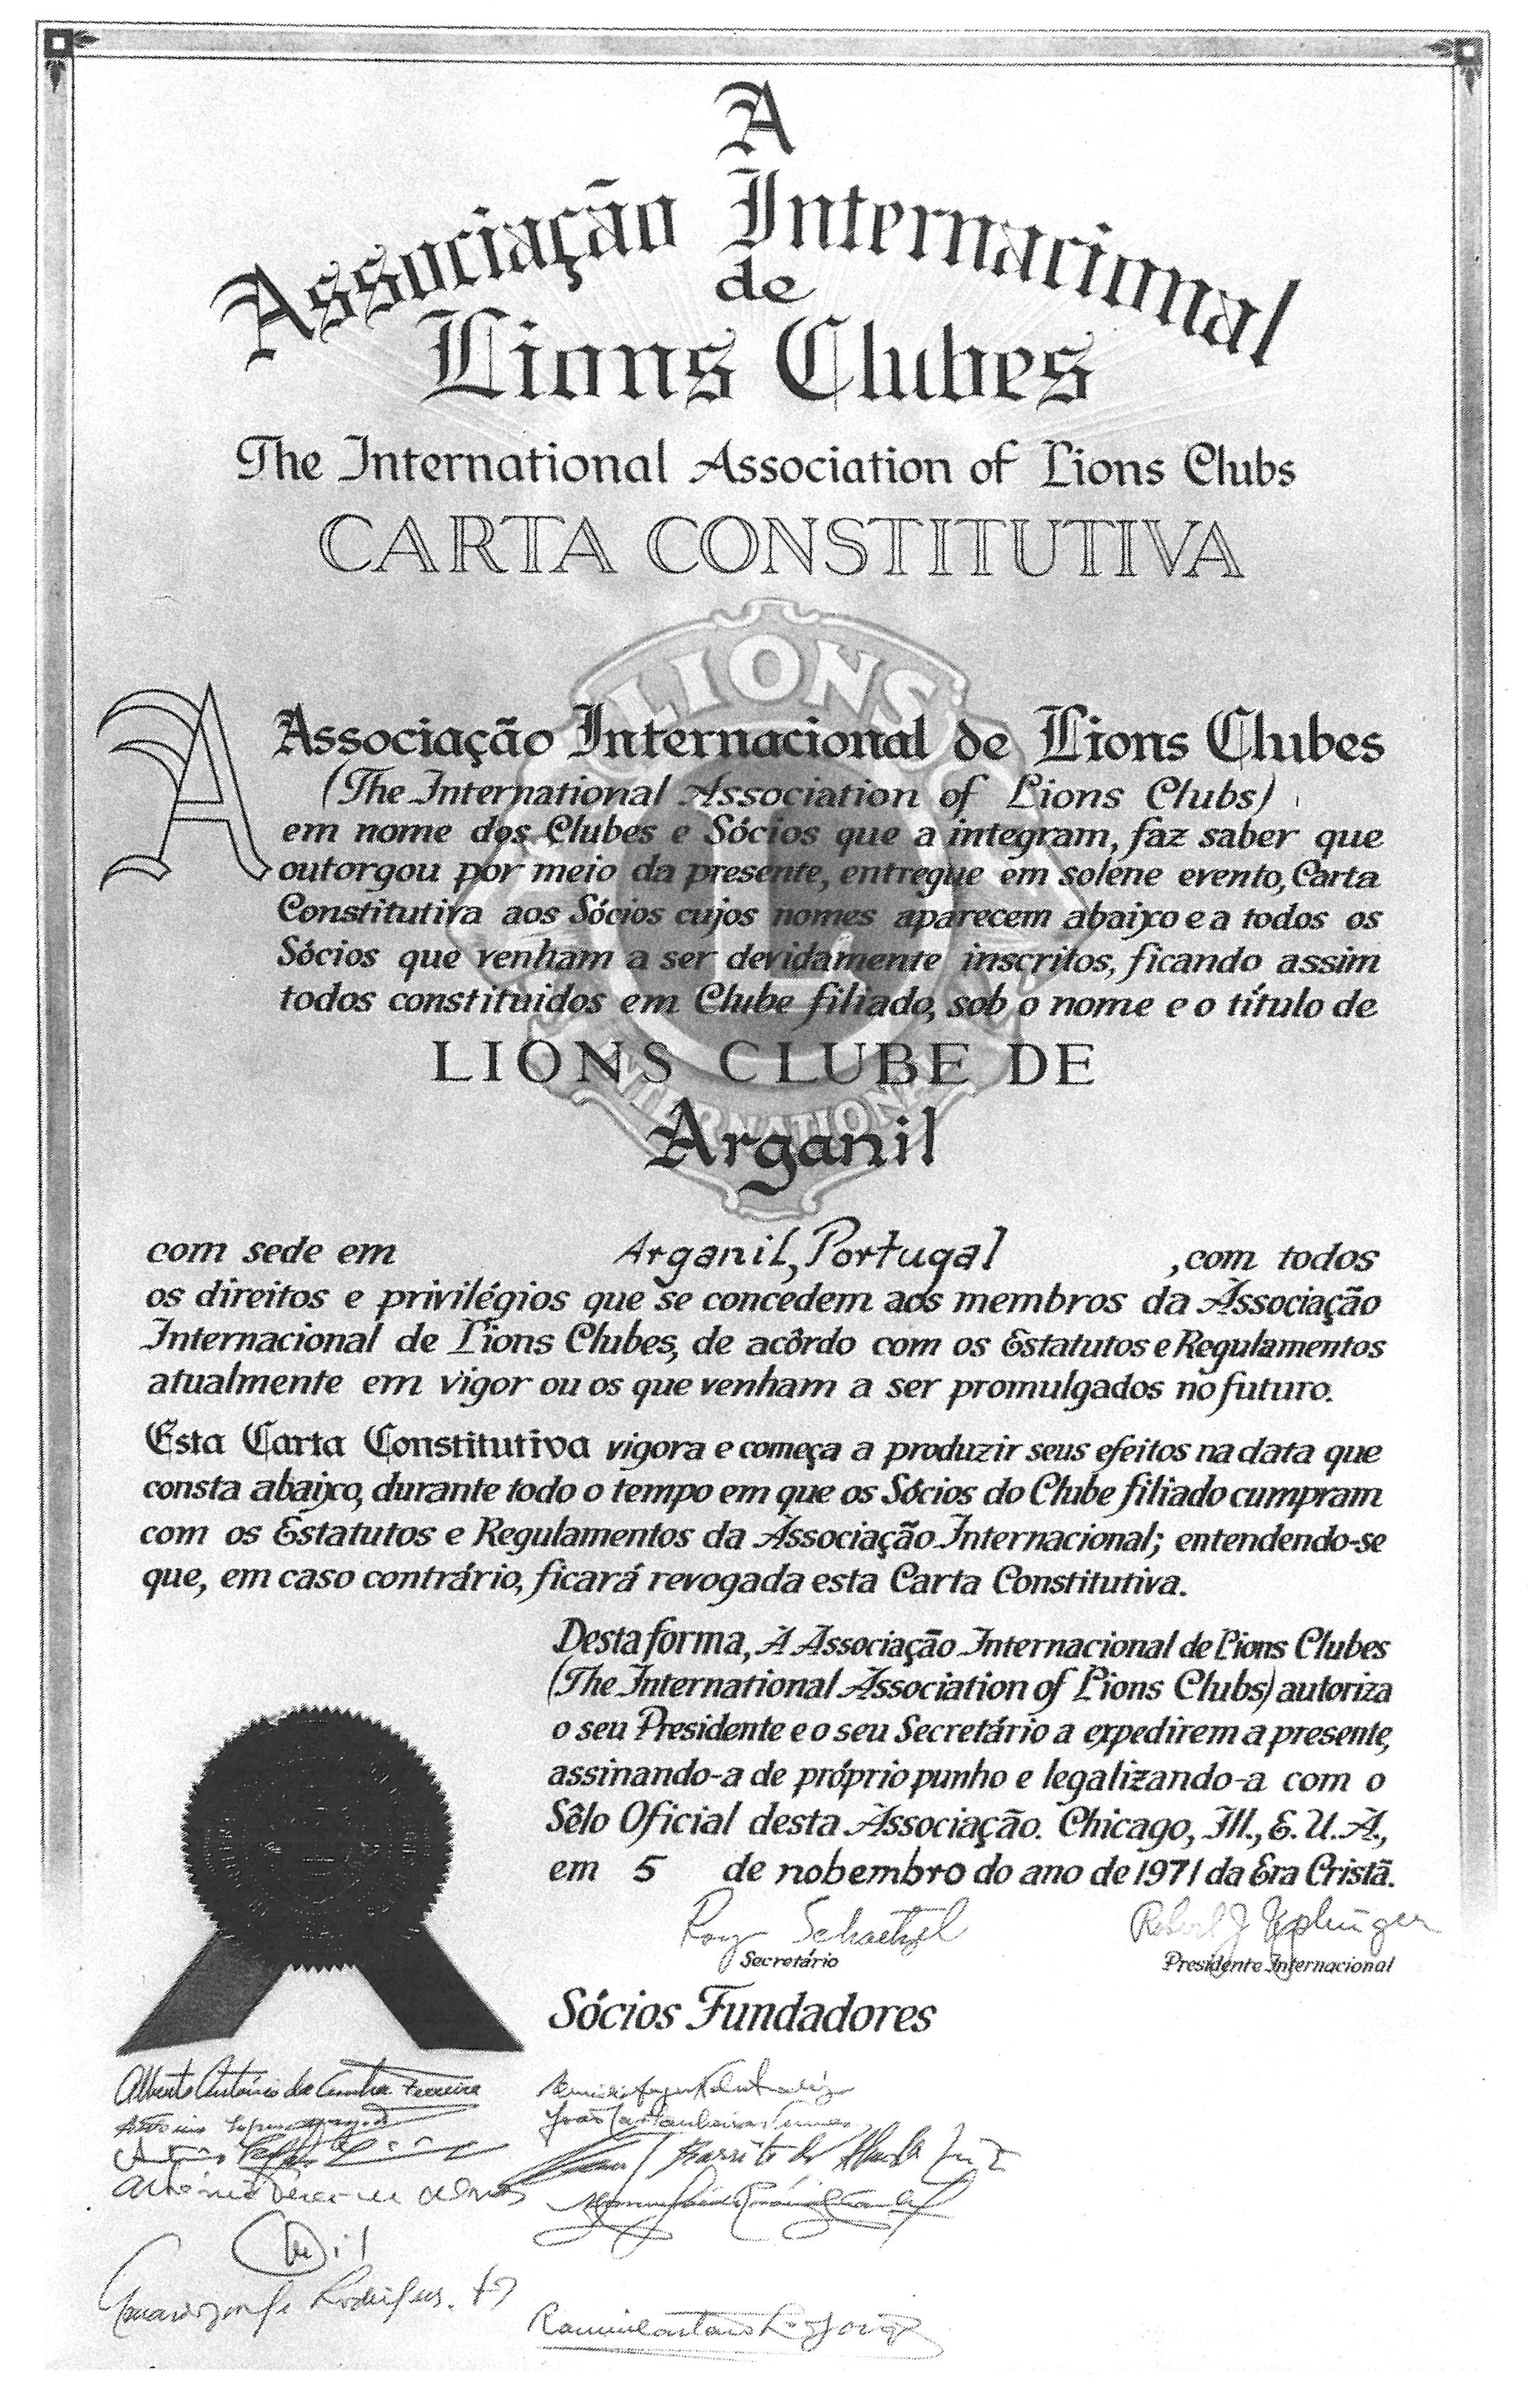 Carta Constitutiva Lions